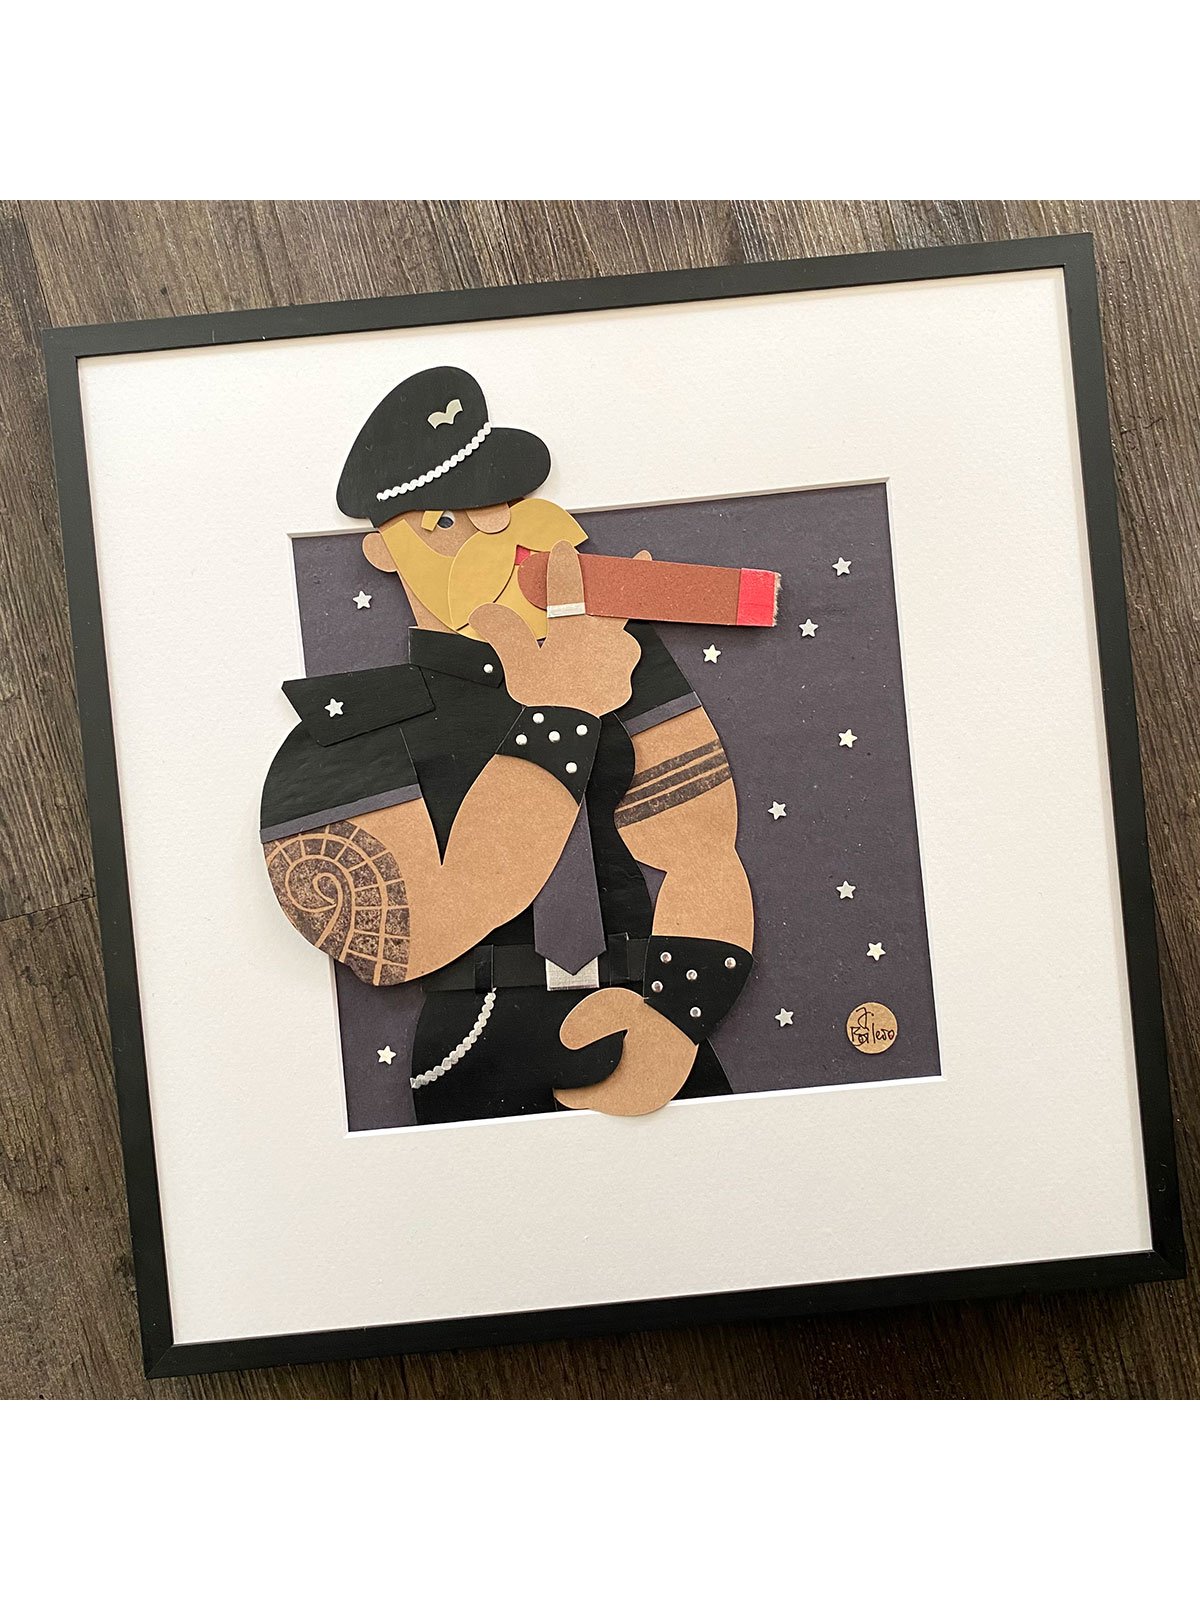 Collage "Berlin Cigar Man 1" 33 x 33 cm | Juan Boilero